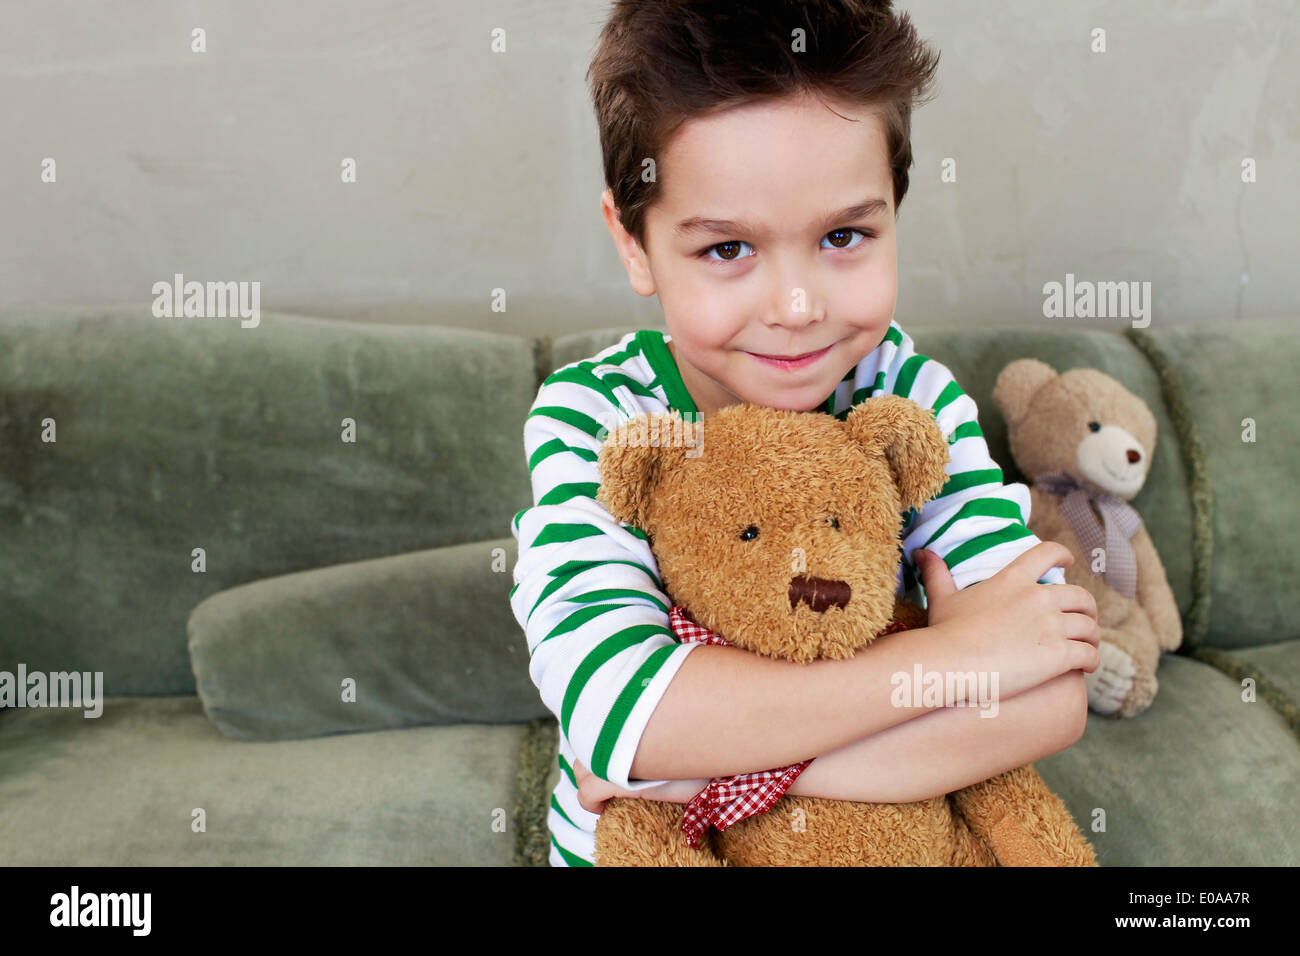 Ritratto di giovane ragazzo sul divano abbracciando teddy Foto Stock